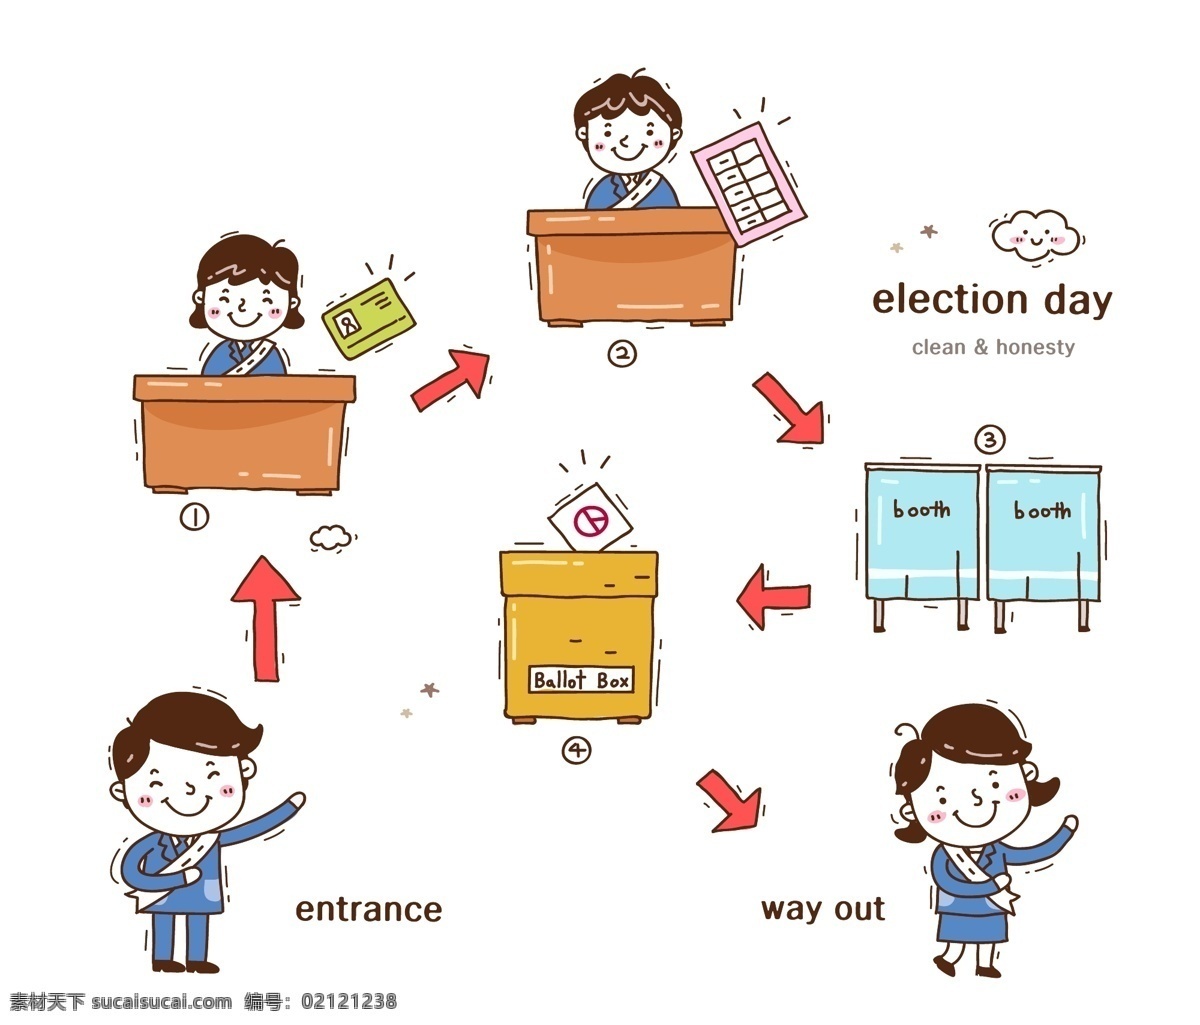 选举 投票 流程 宣传 矢量 矢量素材 设计素材 背景素材